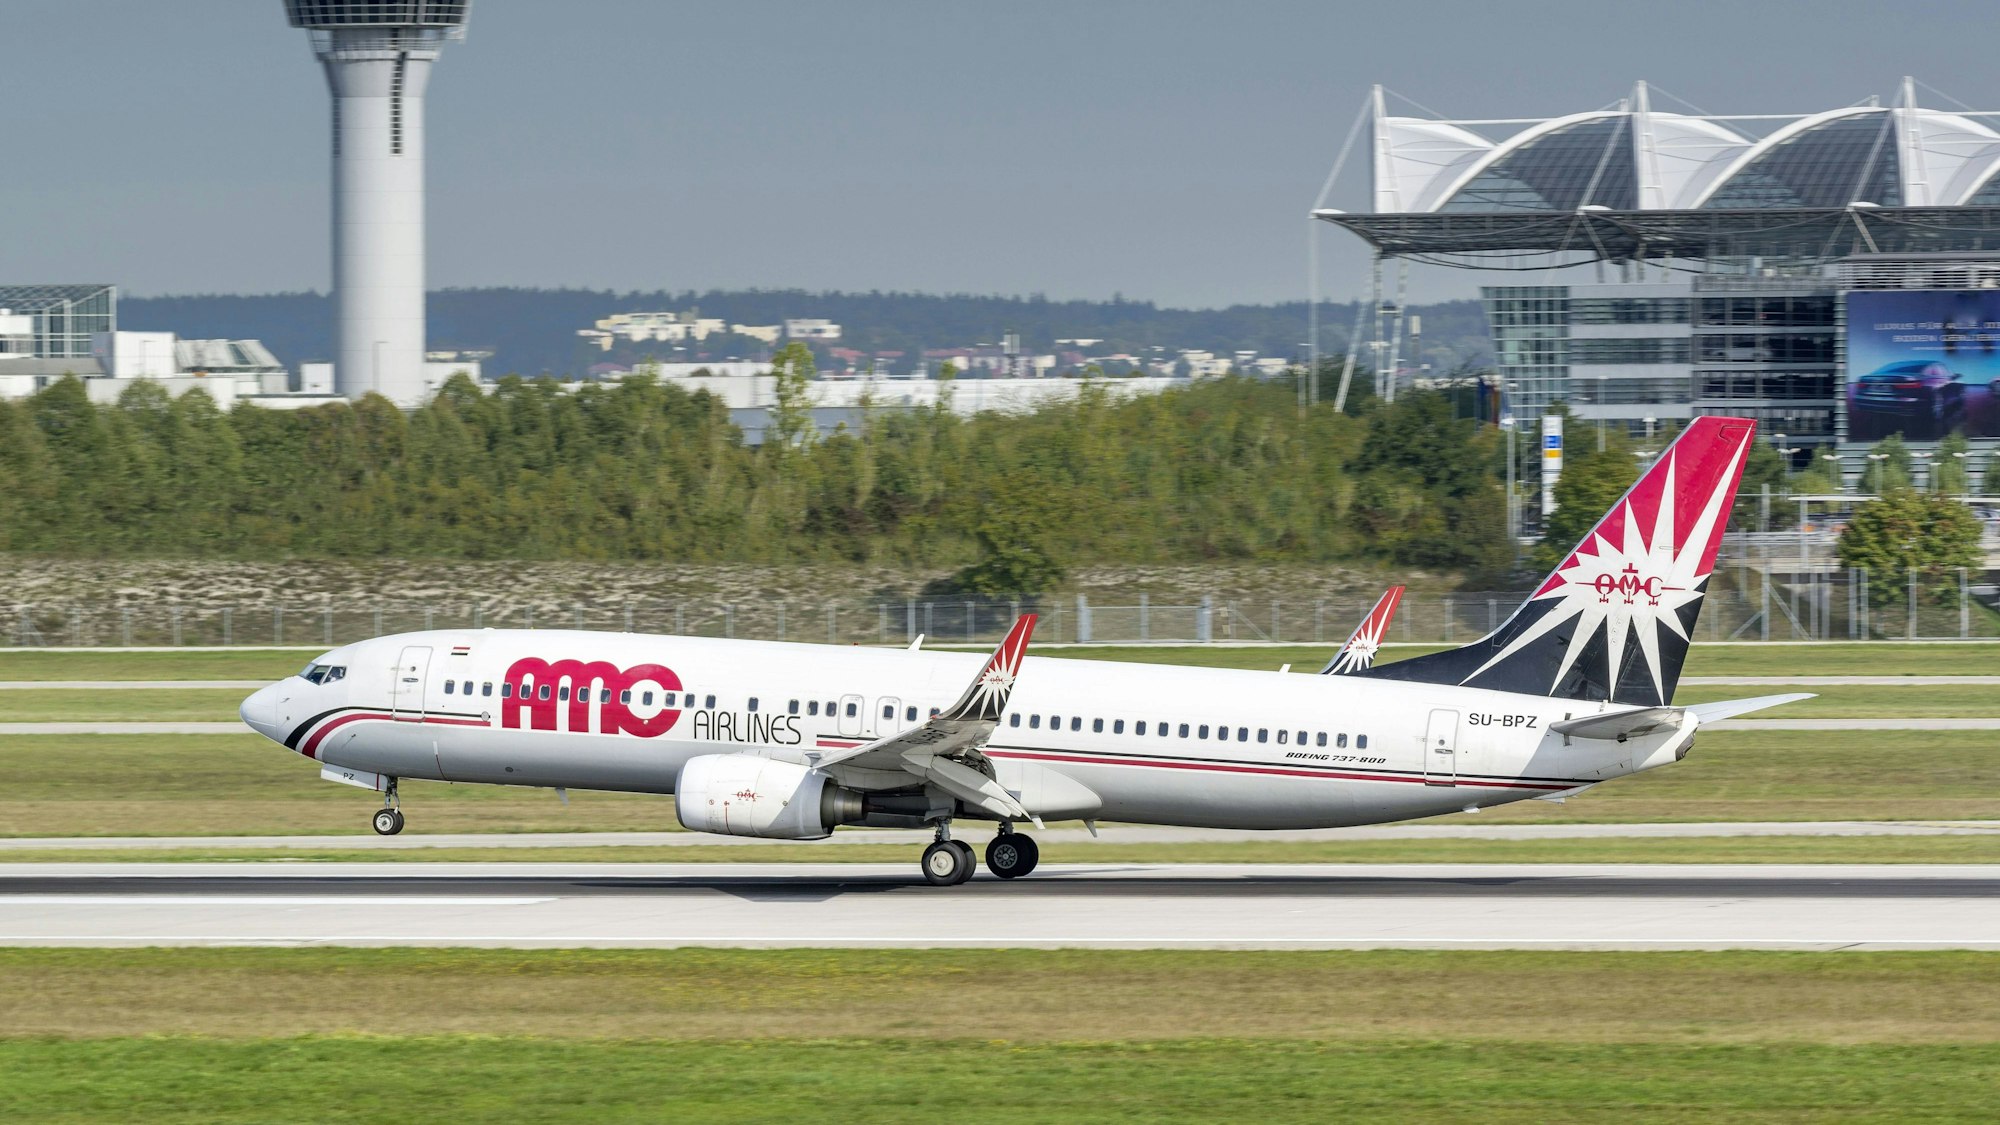 Eine Boeing 737-86N von AMC Airlines landet auf der südlichen Landebahn des Flughafens München (Symbolbild).